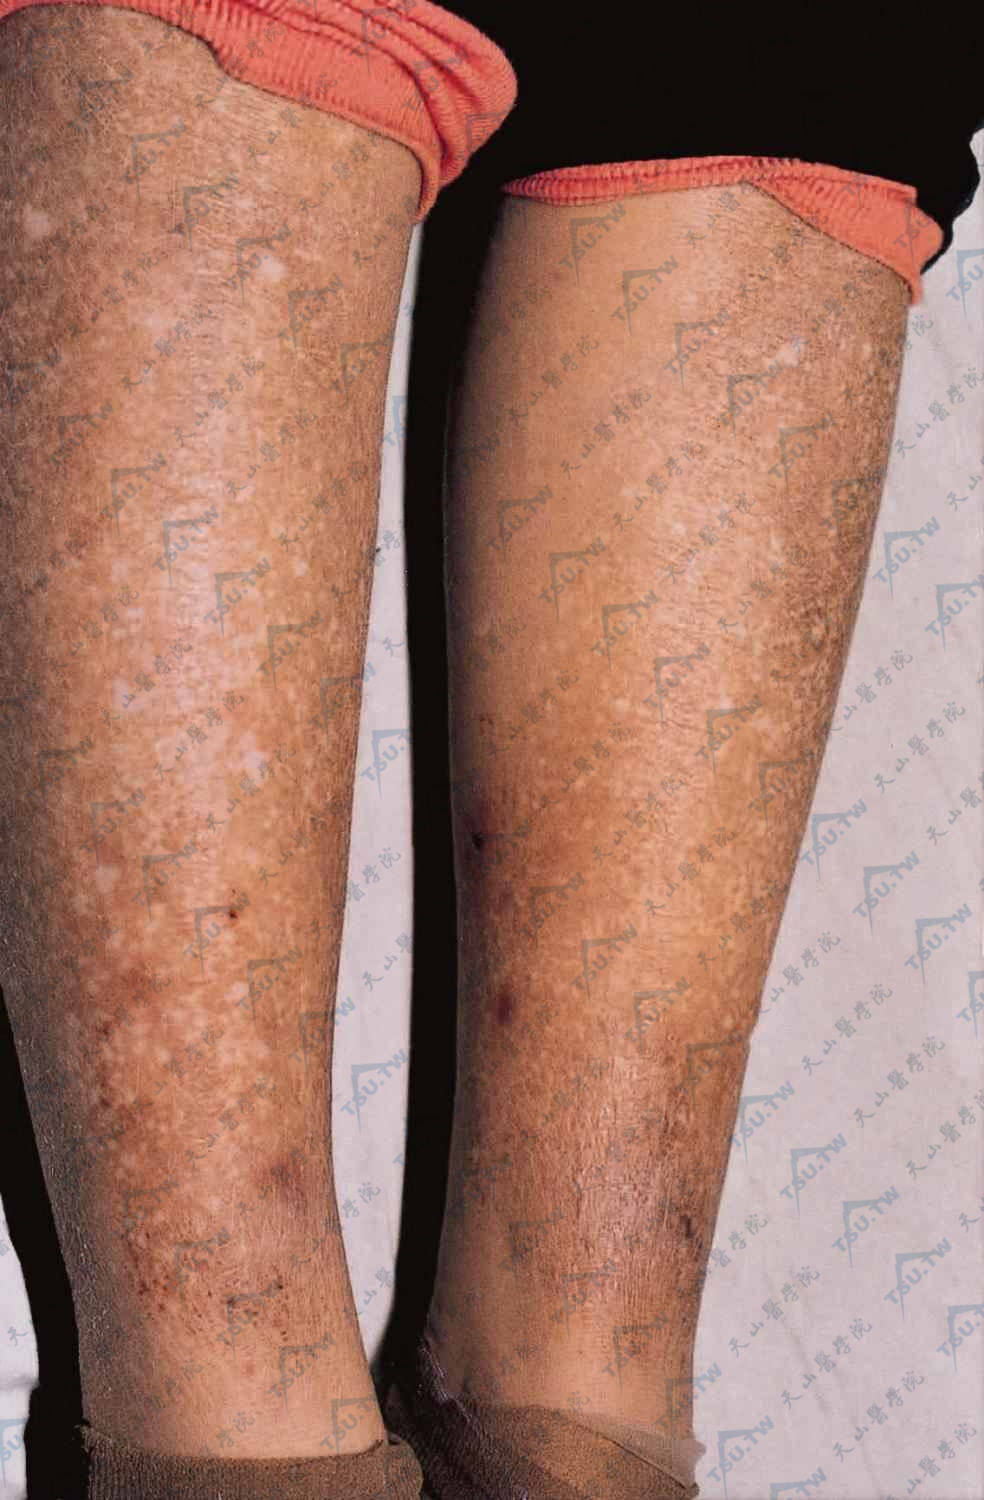 淀粉样变病（下肢、异色病样）两下肢见多数针头大丘疹，有色素沉着及减退，呈皮肤异色病样改变